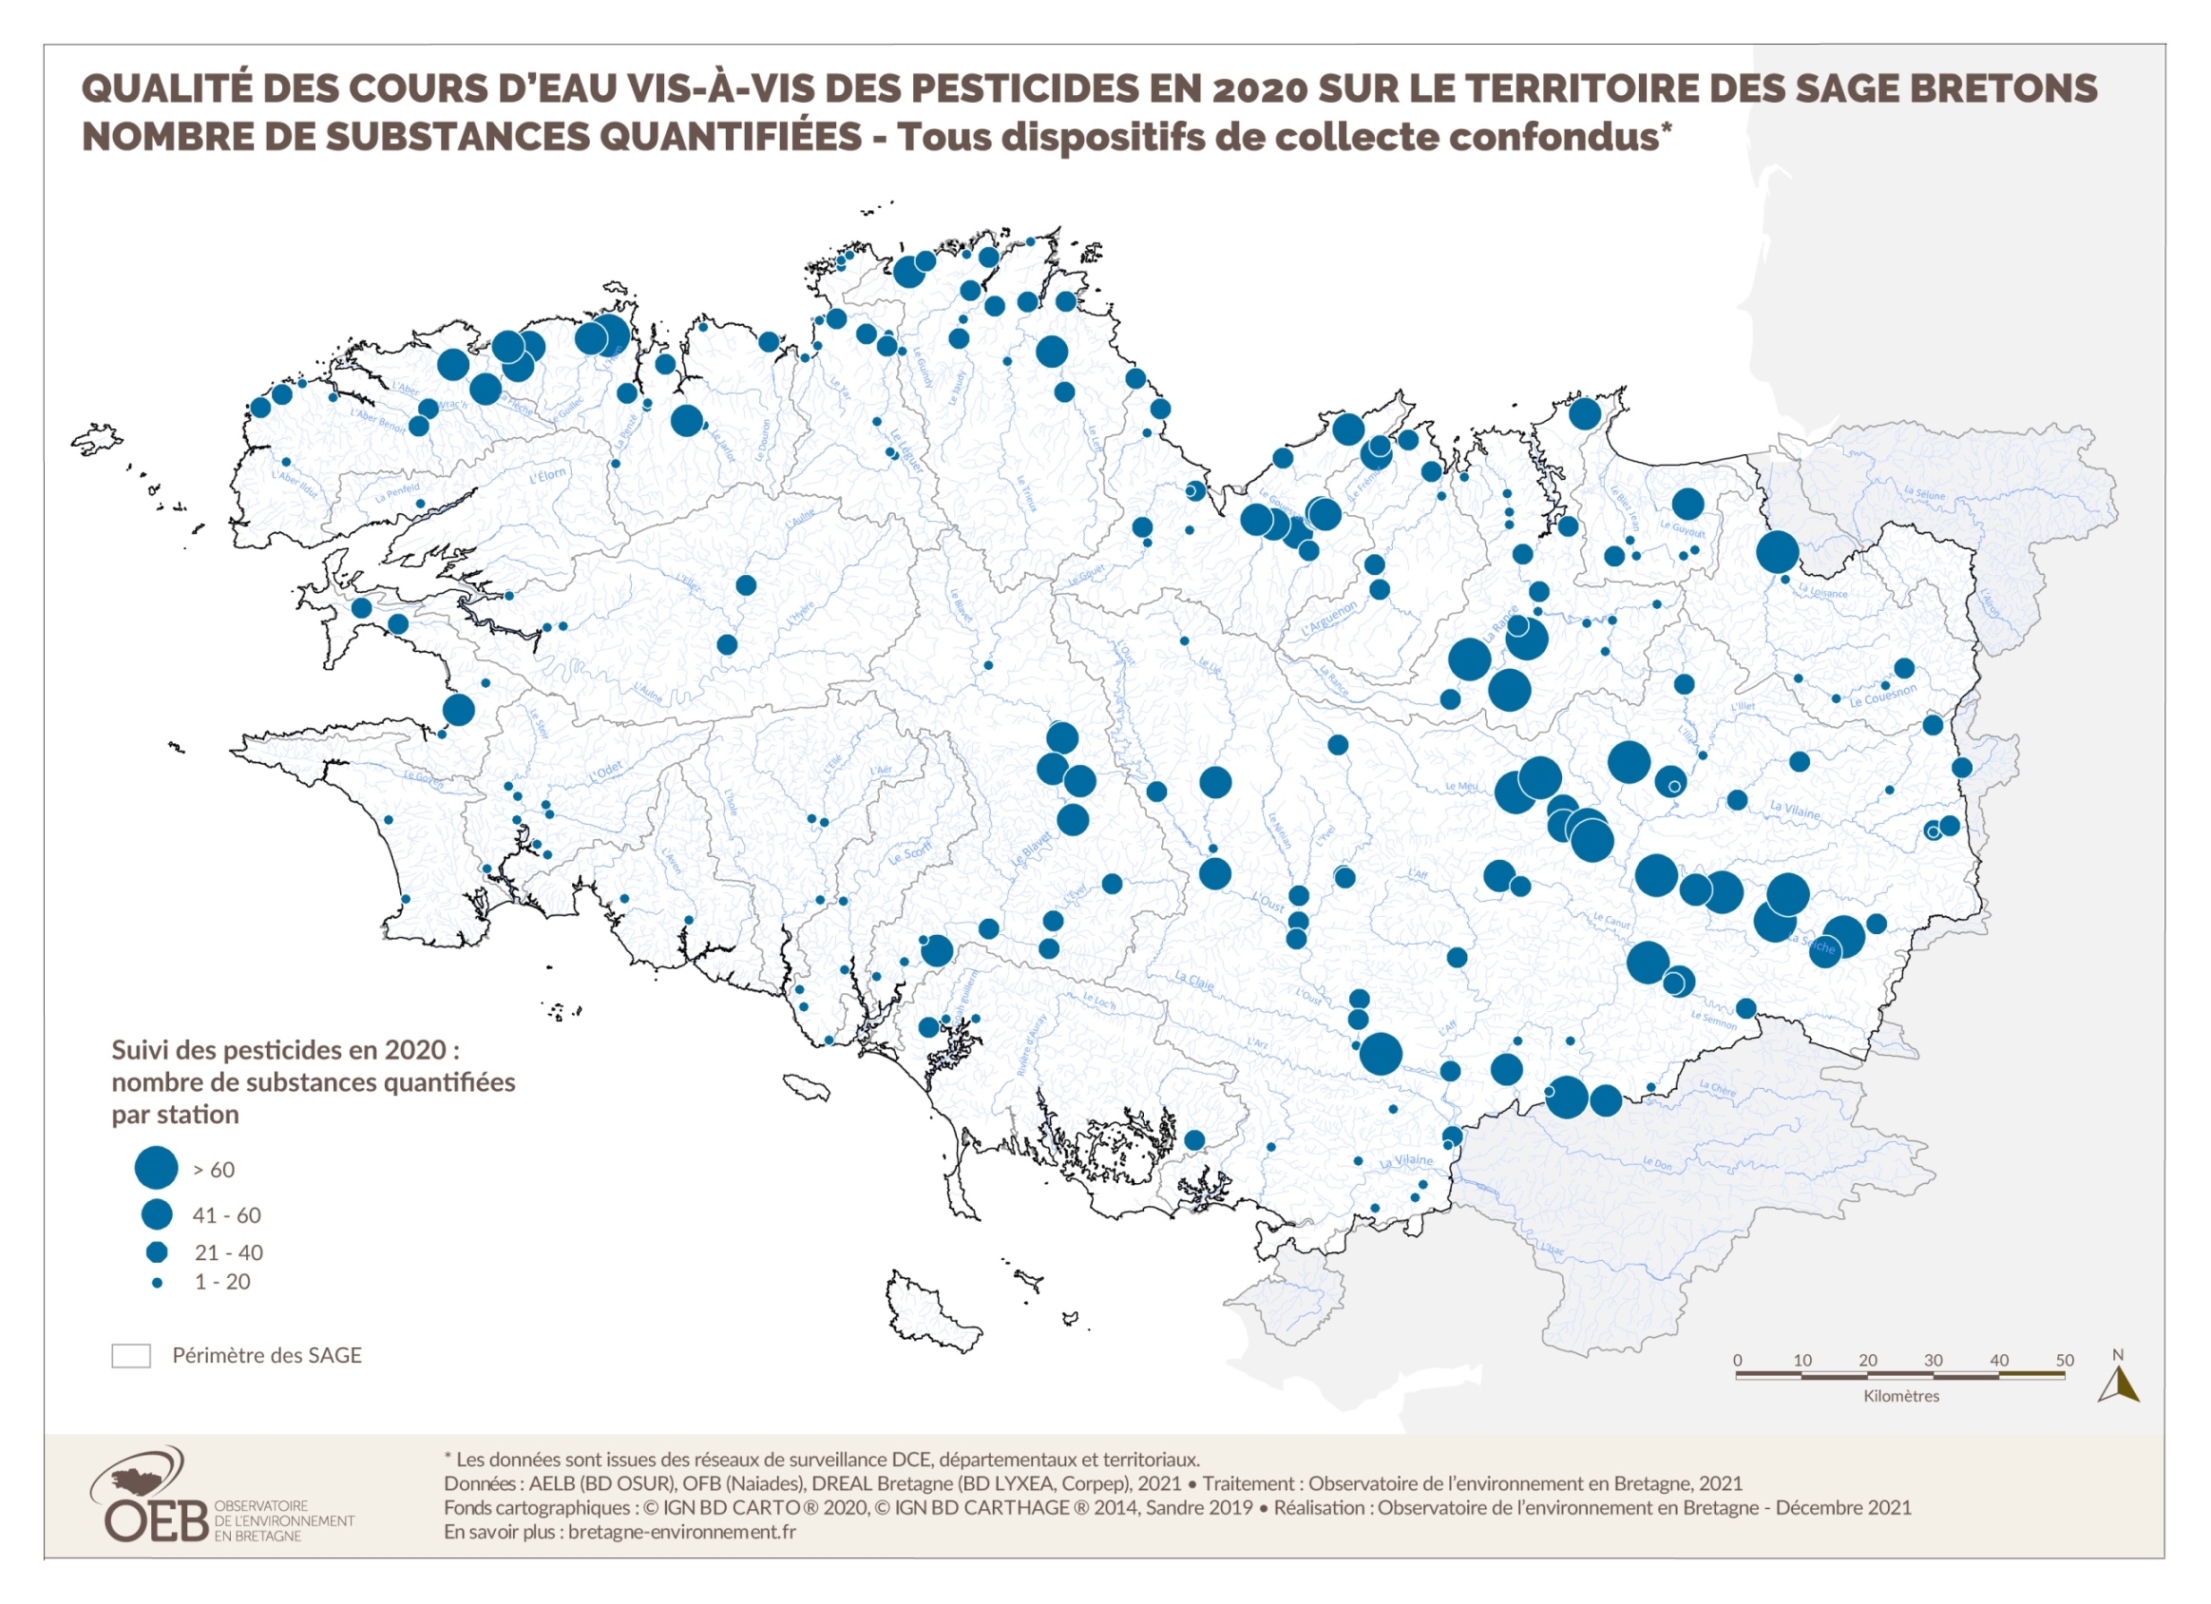 Qualité des cours d'eau bretons vis-à-vis des pesticides en 2020 - Nombre de substances quantifiées